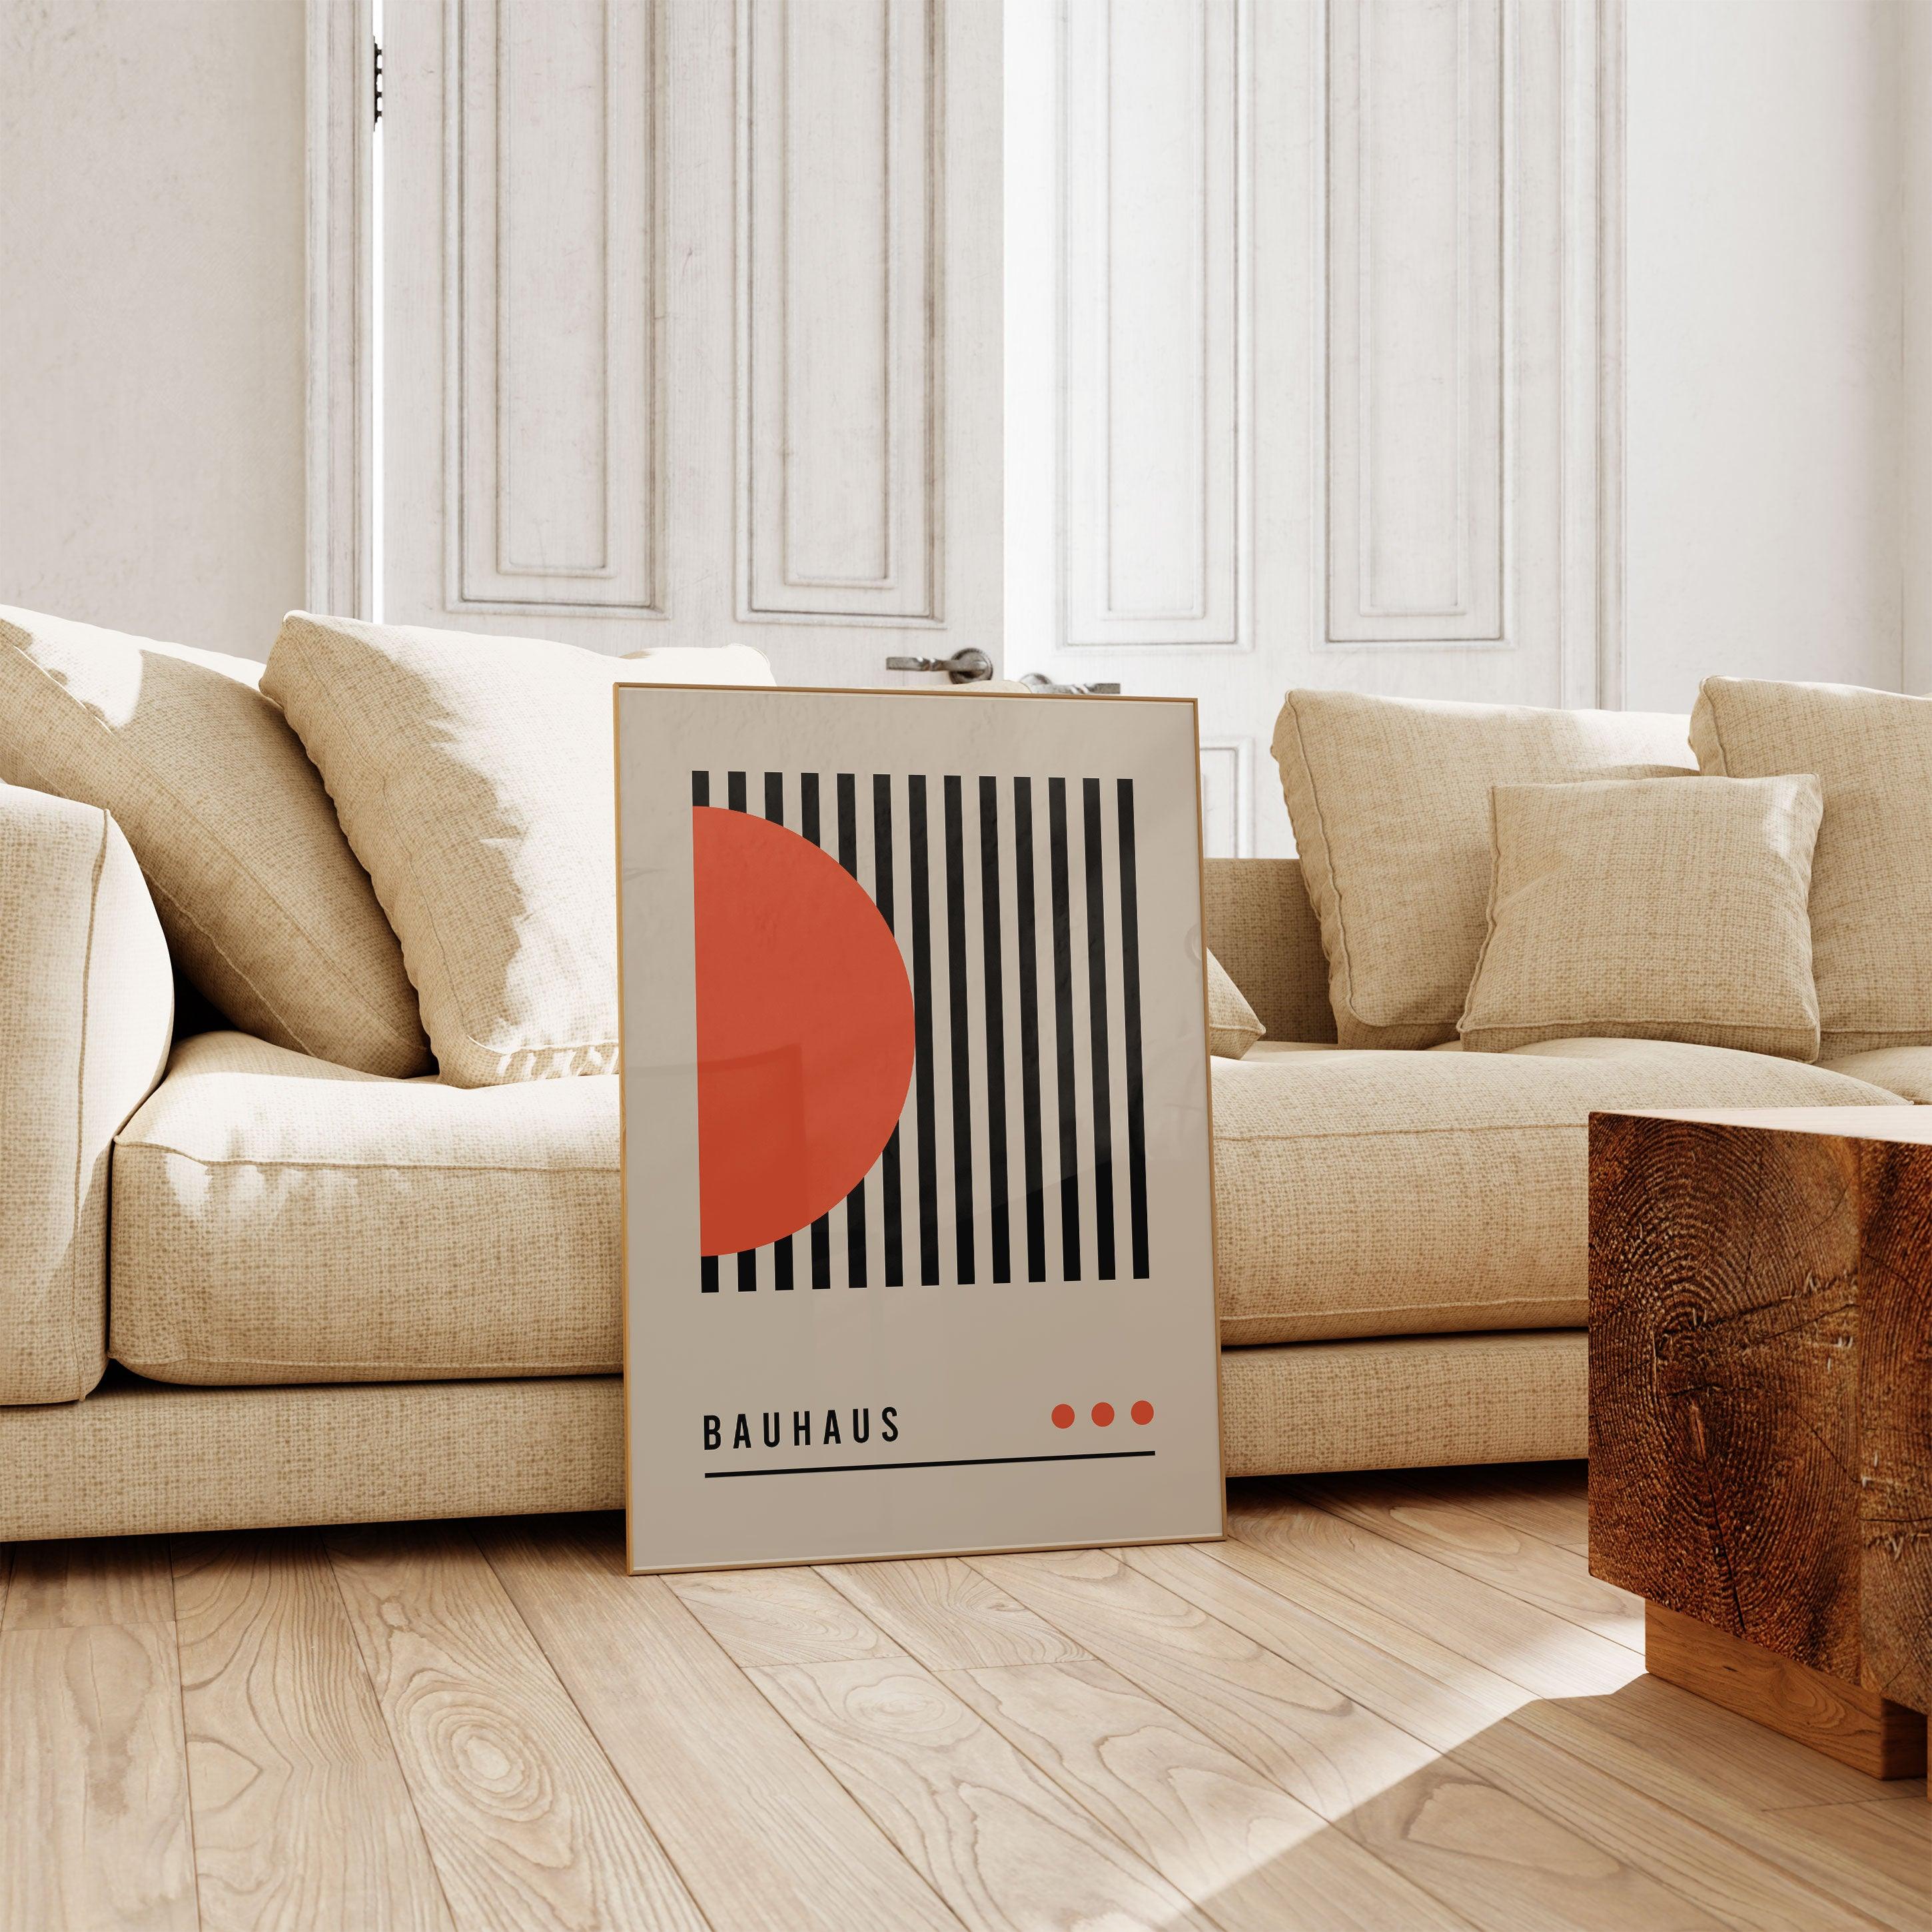 Bauhaus Orange Circle With Lines - stravee - Wall Art Print